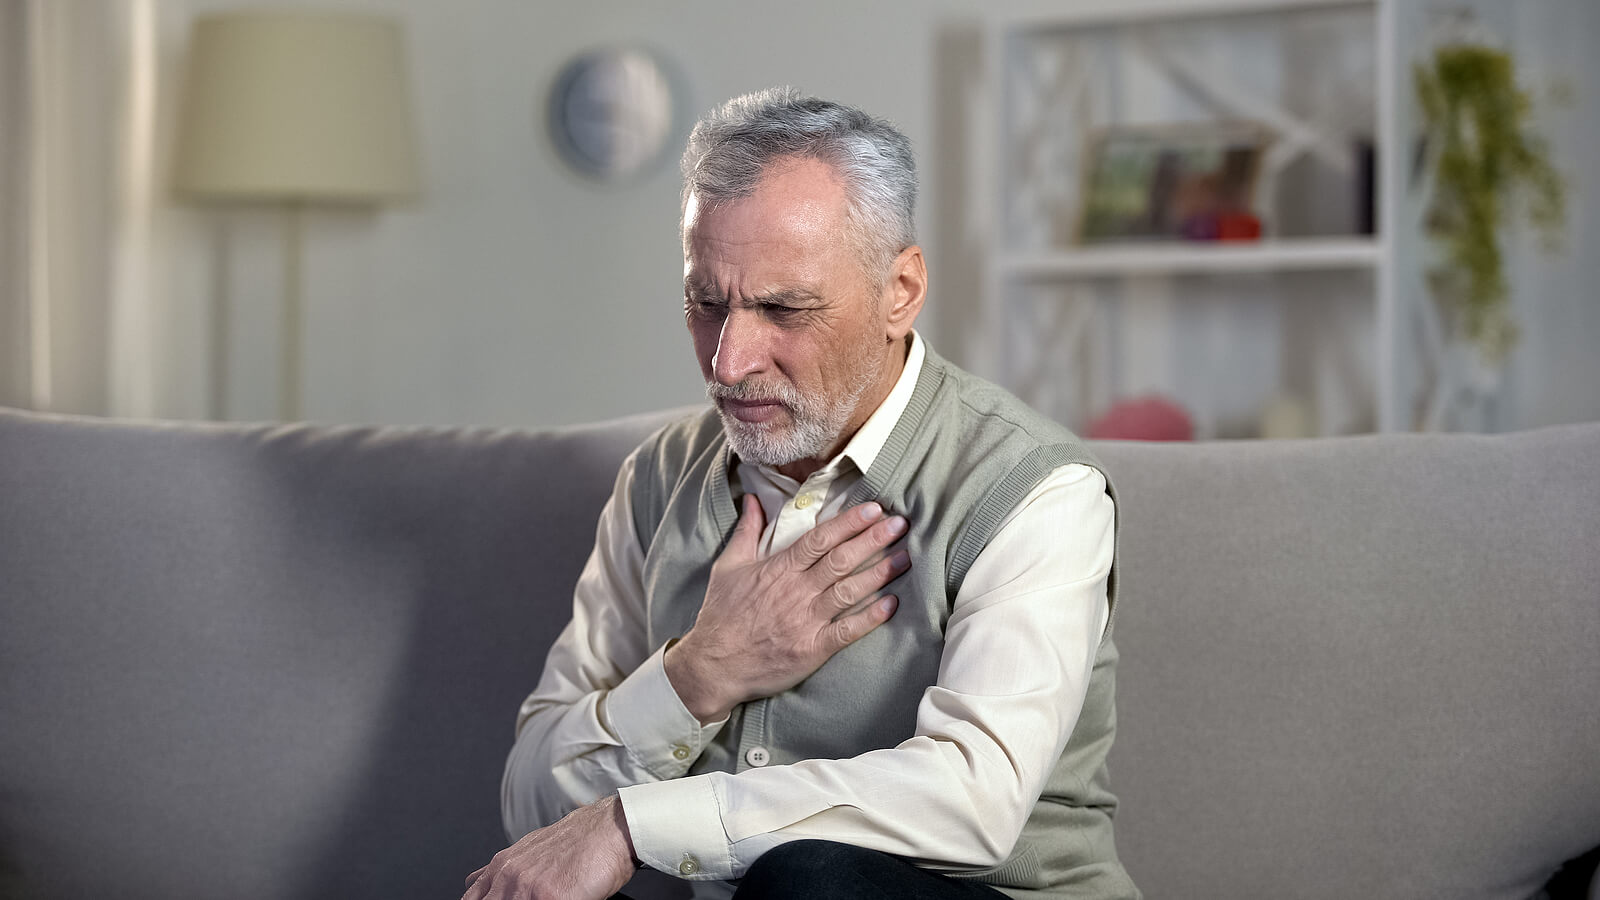 La embolia pulmonar provoca síntomas variados